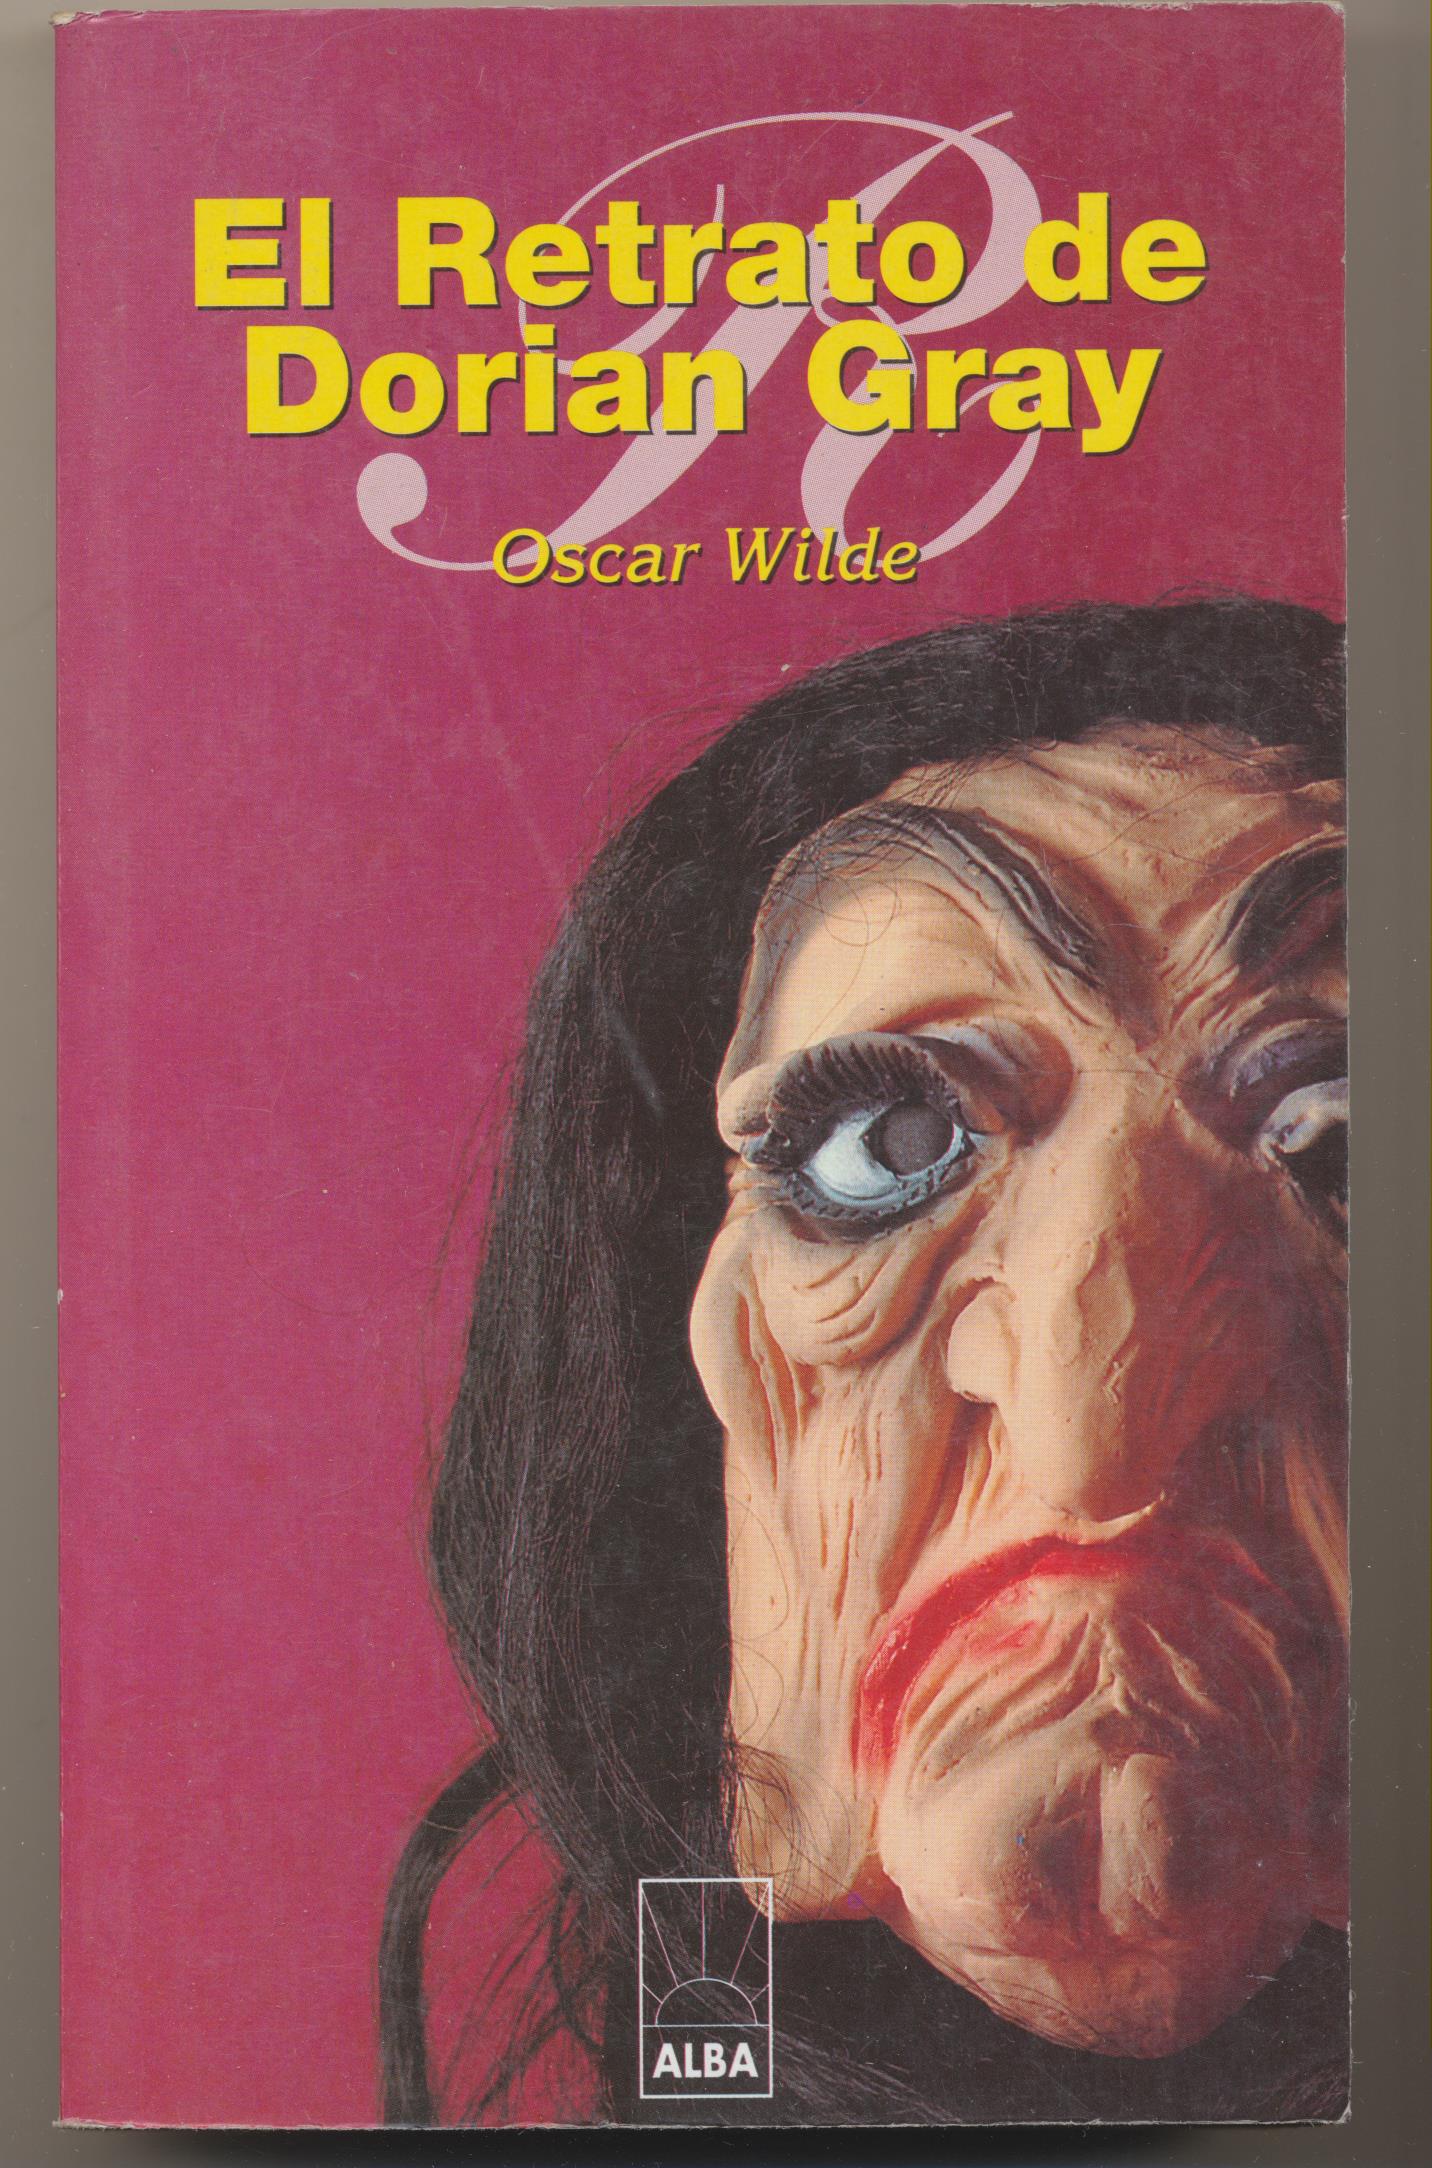 Oscar Wilde. El Retrato de Doriasn Grey. Alba 1999